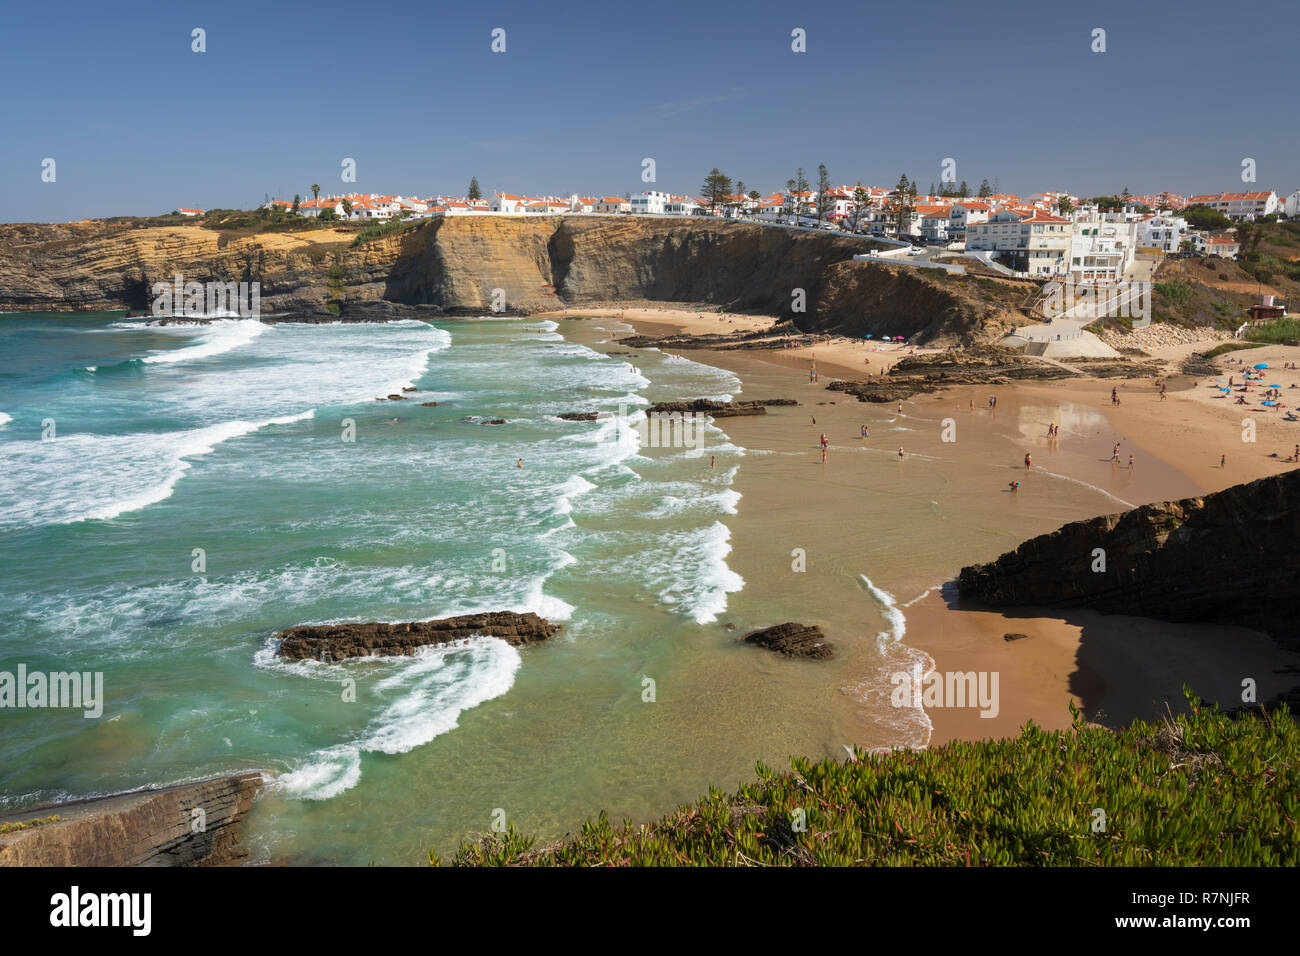 Ciudad encaladas en acantilados por encima de playa y olas del mar Atlántico en sol de mediodía, de Zambujeira do Mar, región de Alentejo, Portugal, Europa Foto de stock